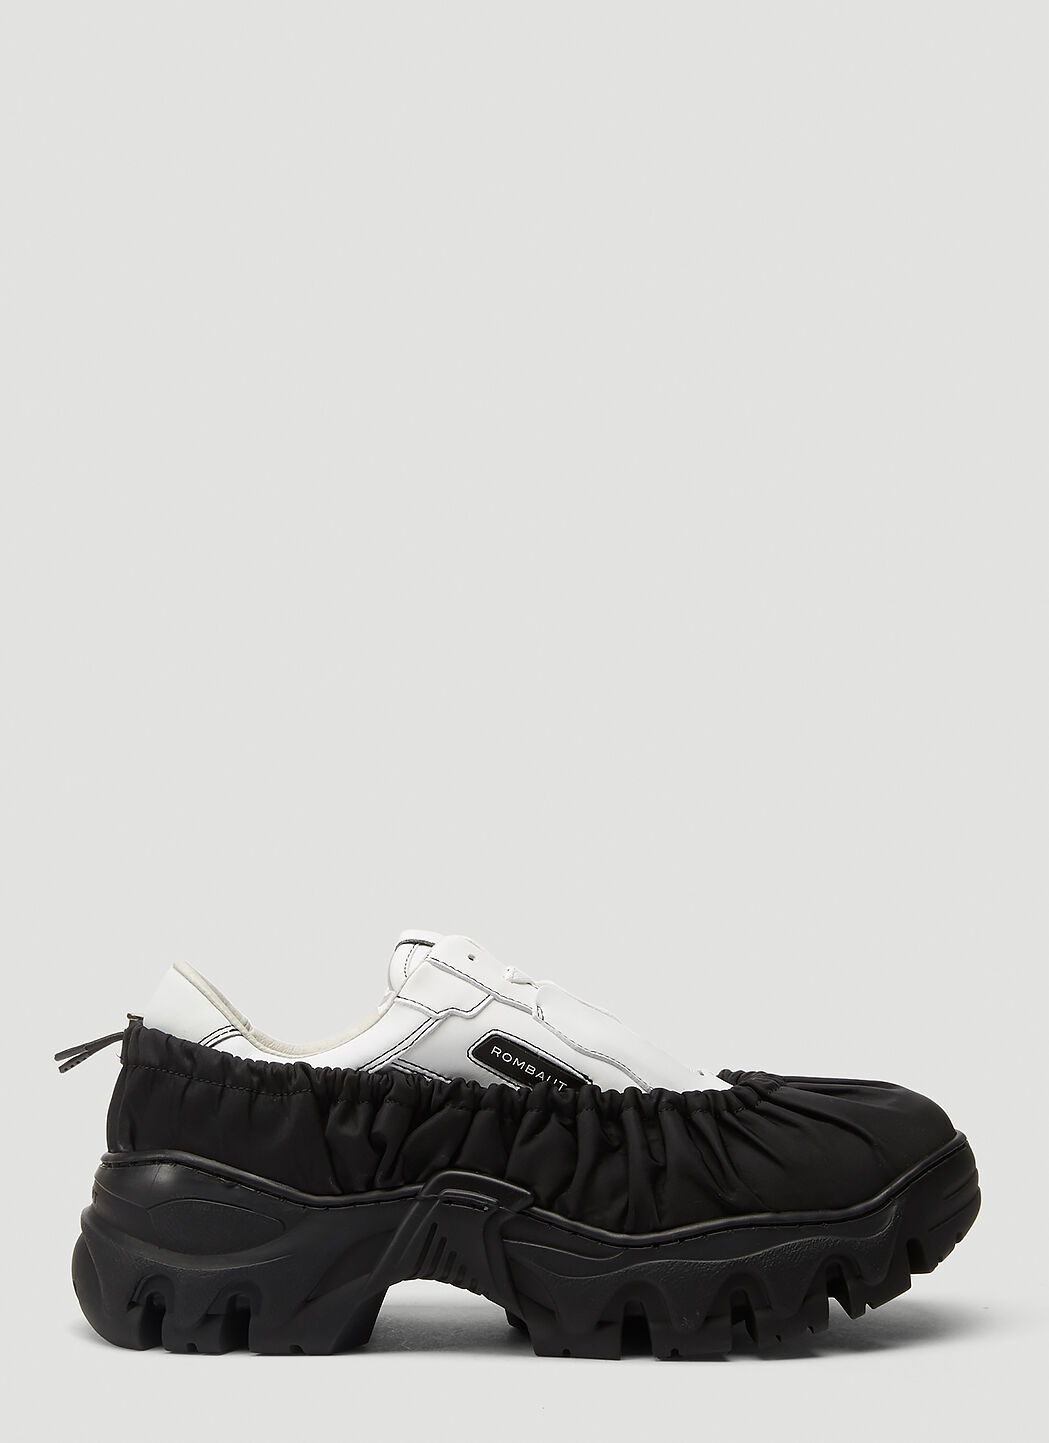 Rombaut Boccaccio II Future Nylon Bag Sneakers ブラック rmb0244004